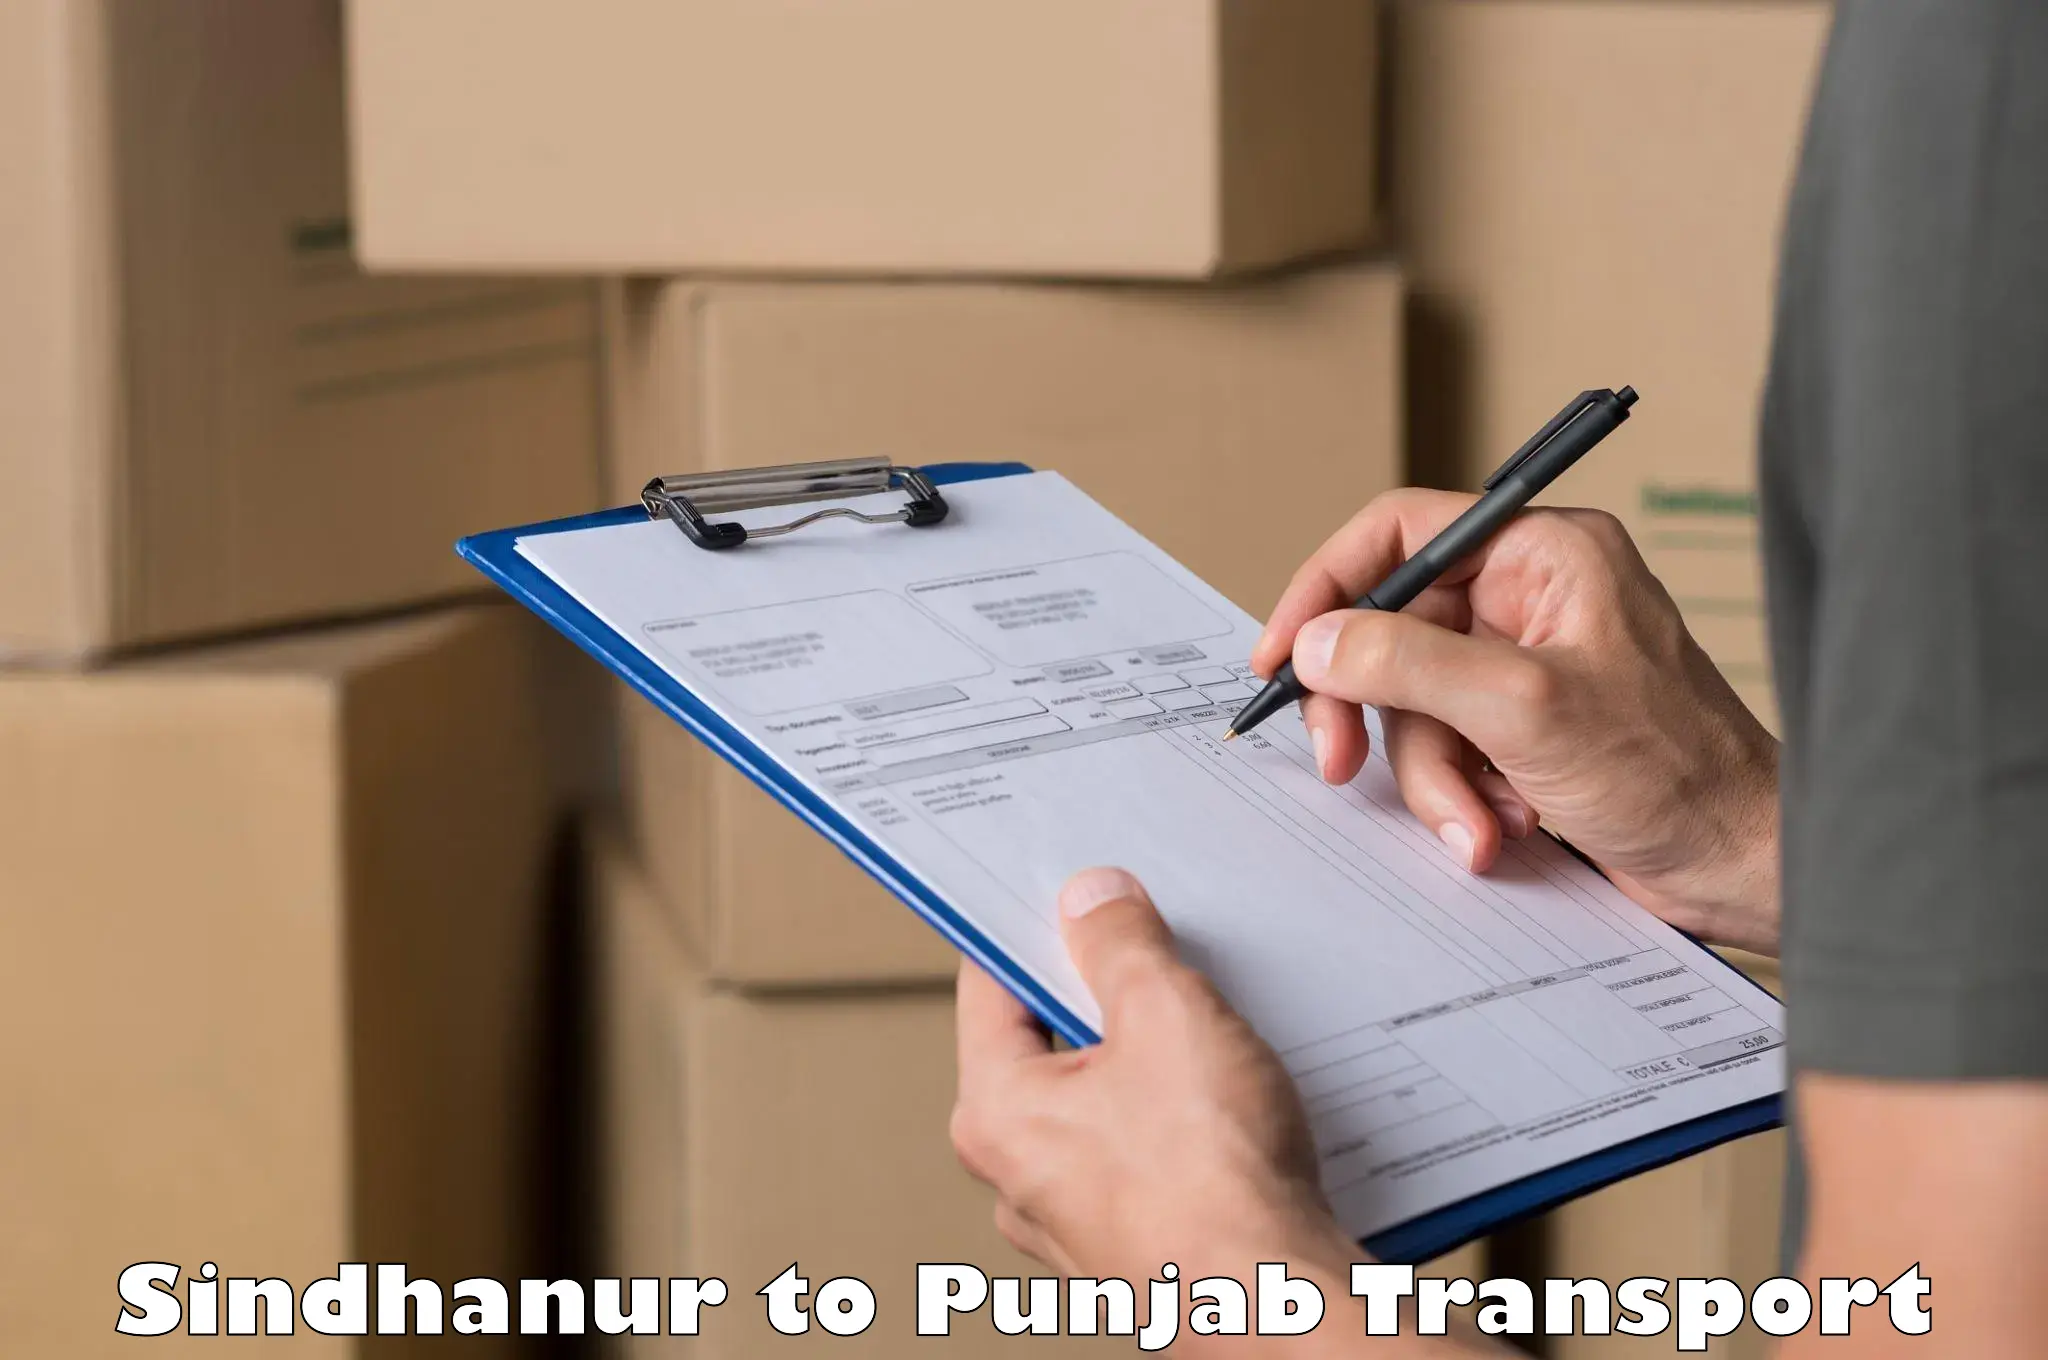 Daily transport service Sindhanur to Punjab